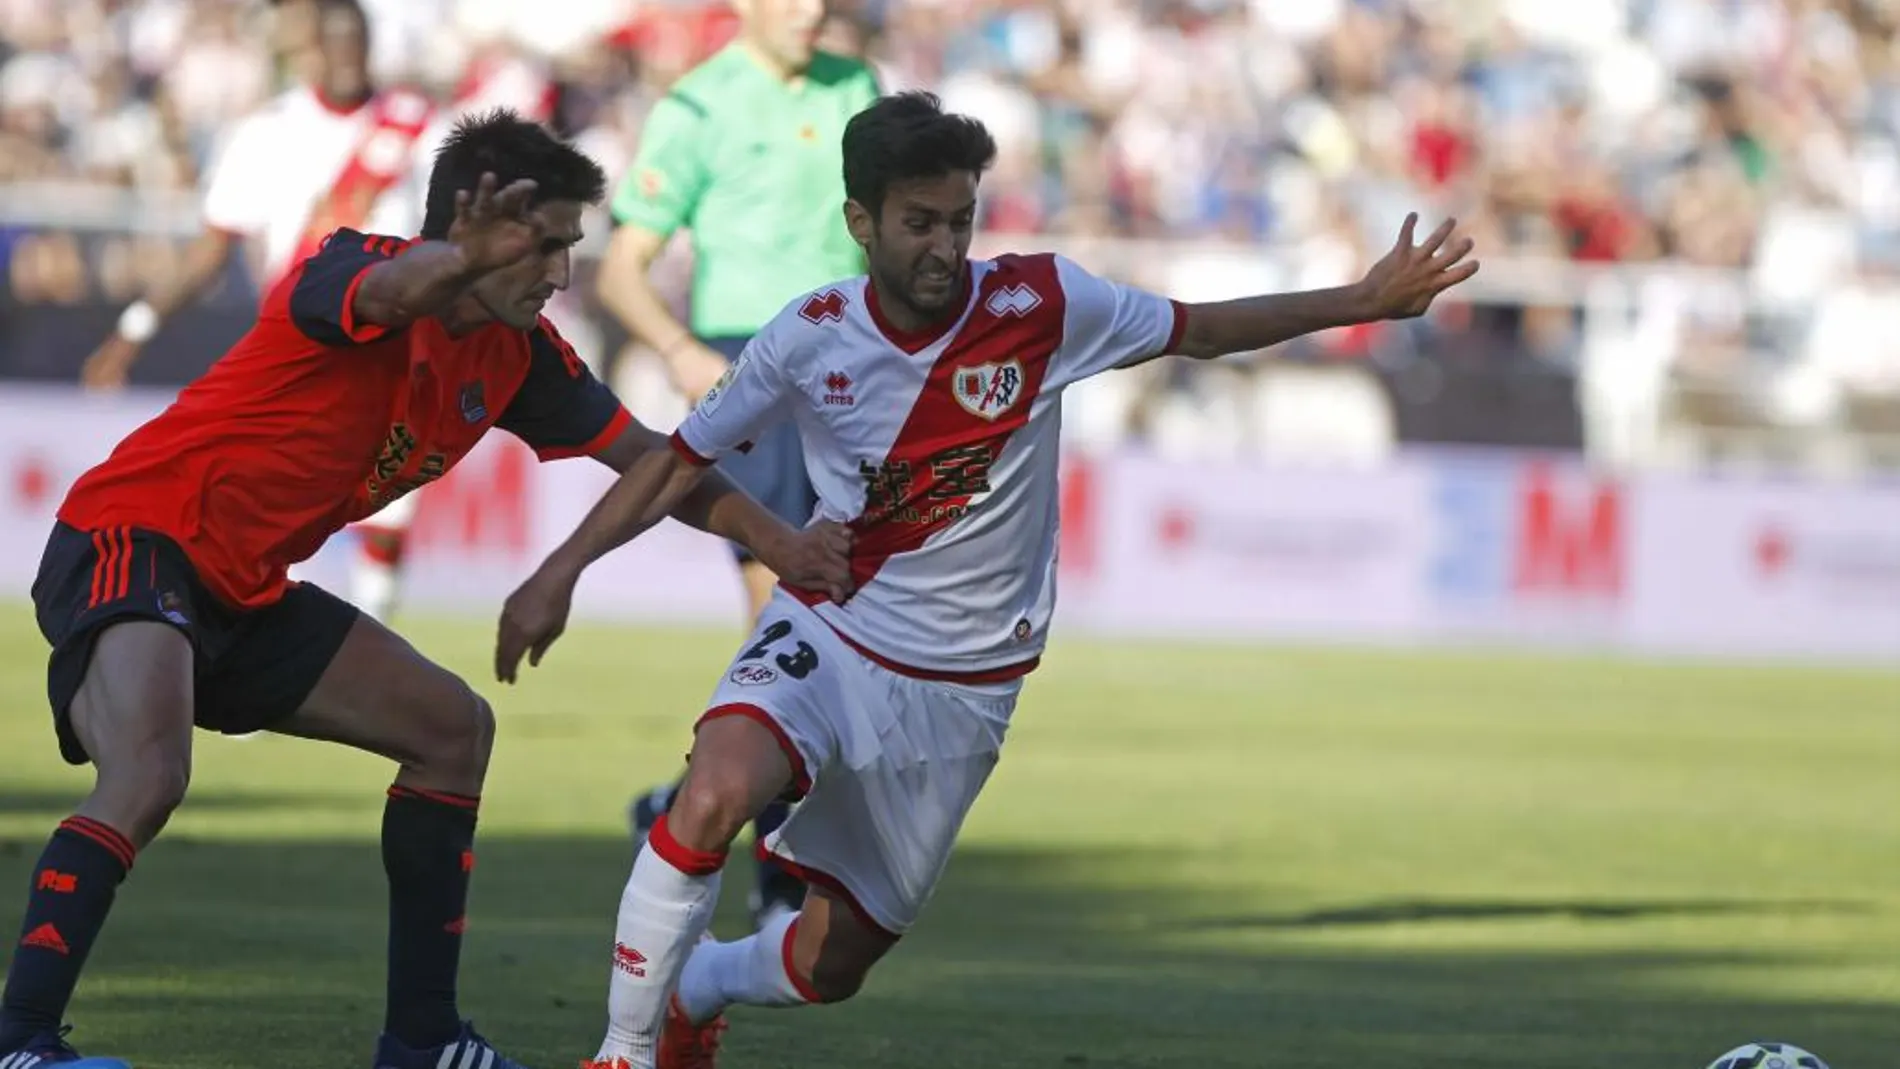 El centrocampista de la Real Sociedad Markel Bergara pugna por el balón con el delantero del Rayo Vallecano, Alberto Bueno